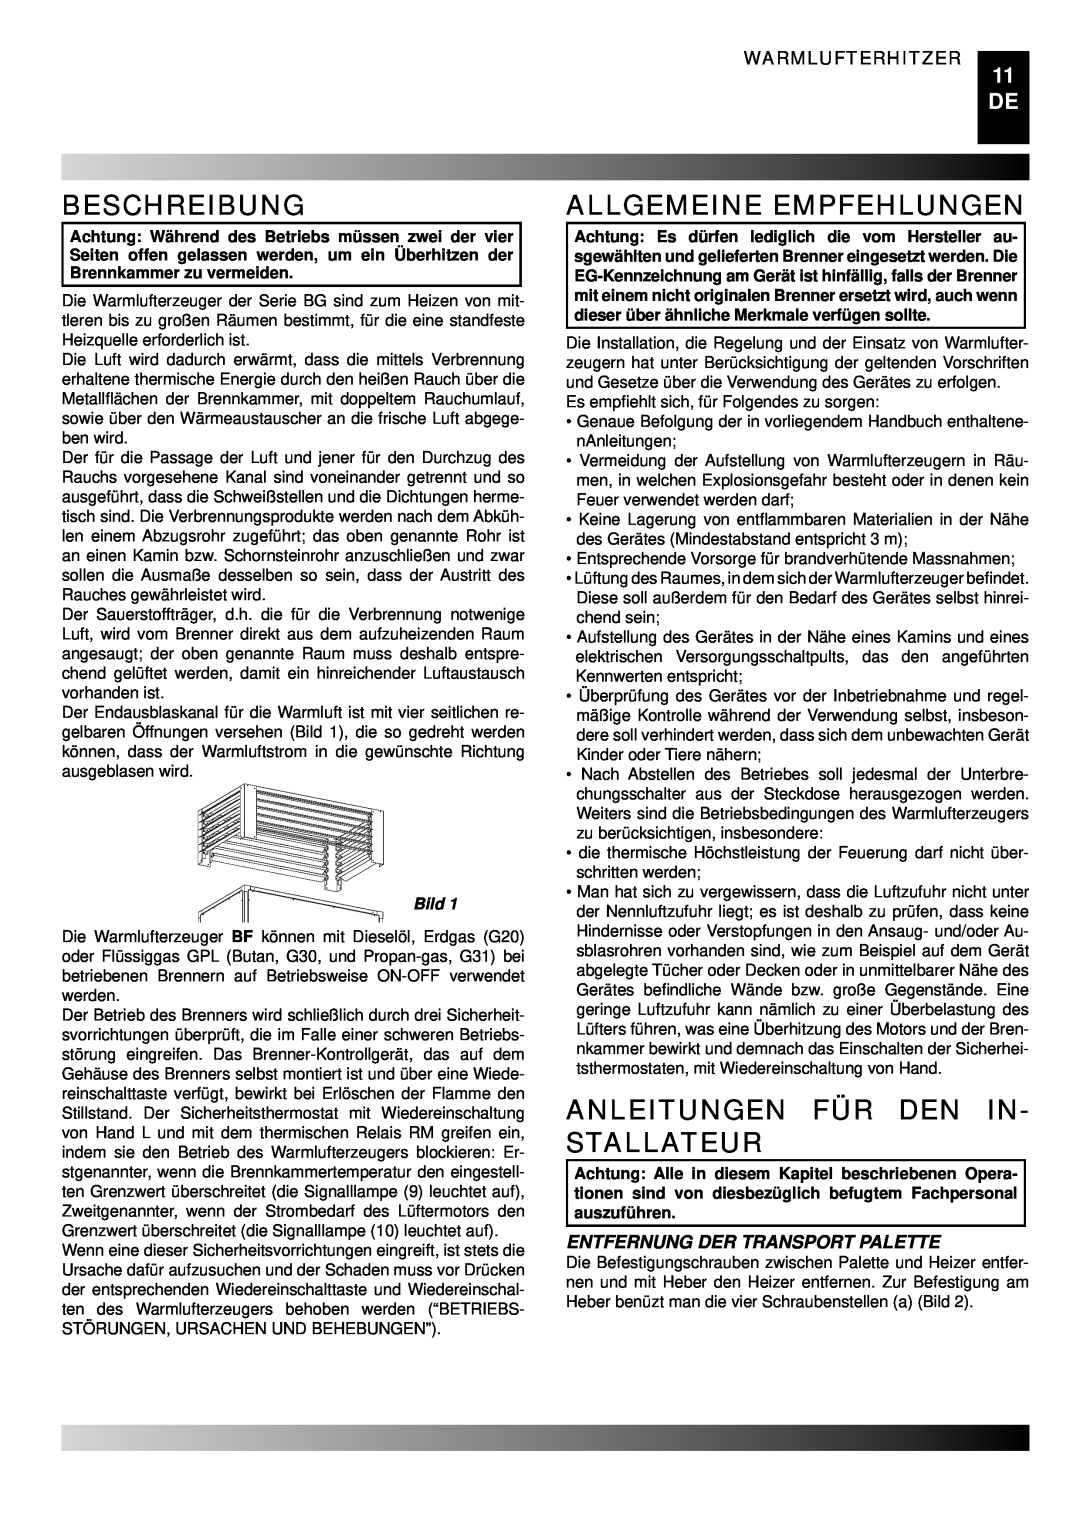 Master Lock BG 200 manual Beschreibung, Allgemeine Empfehlungen, Anleitungen Für Den In- Stallateur, Warmlufterhitzer, Bild 